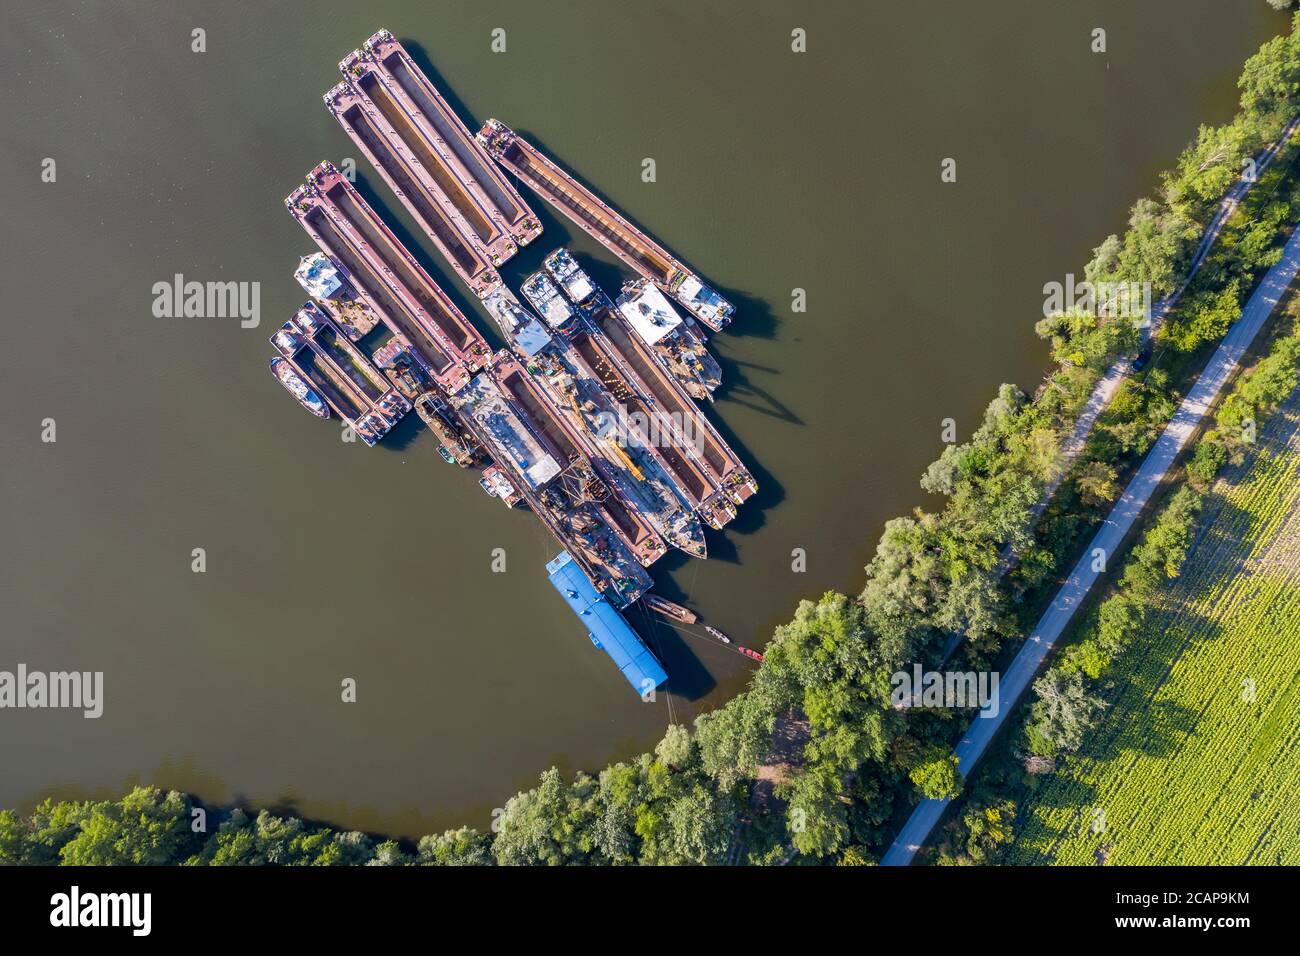 Naufrages rouillés dans le virage du Danube. Navire de cimenterie à côté de la ville de Pilismarot en Hongrie. Les vieux navires industriels inutiles polluent l'environnement Banque D'Images